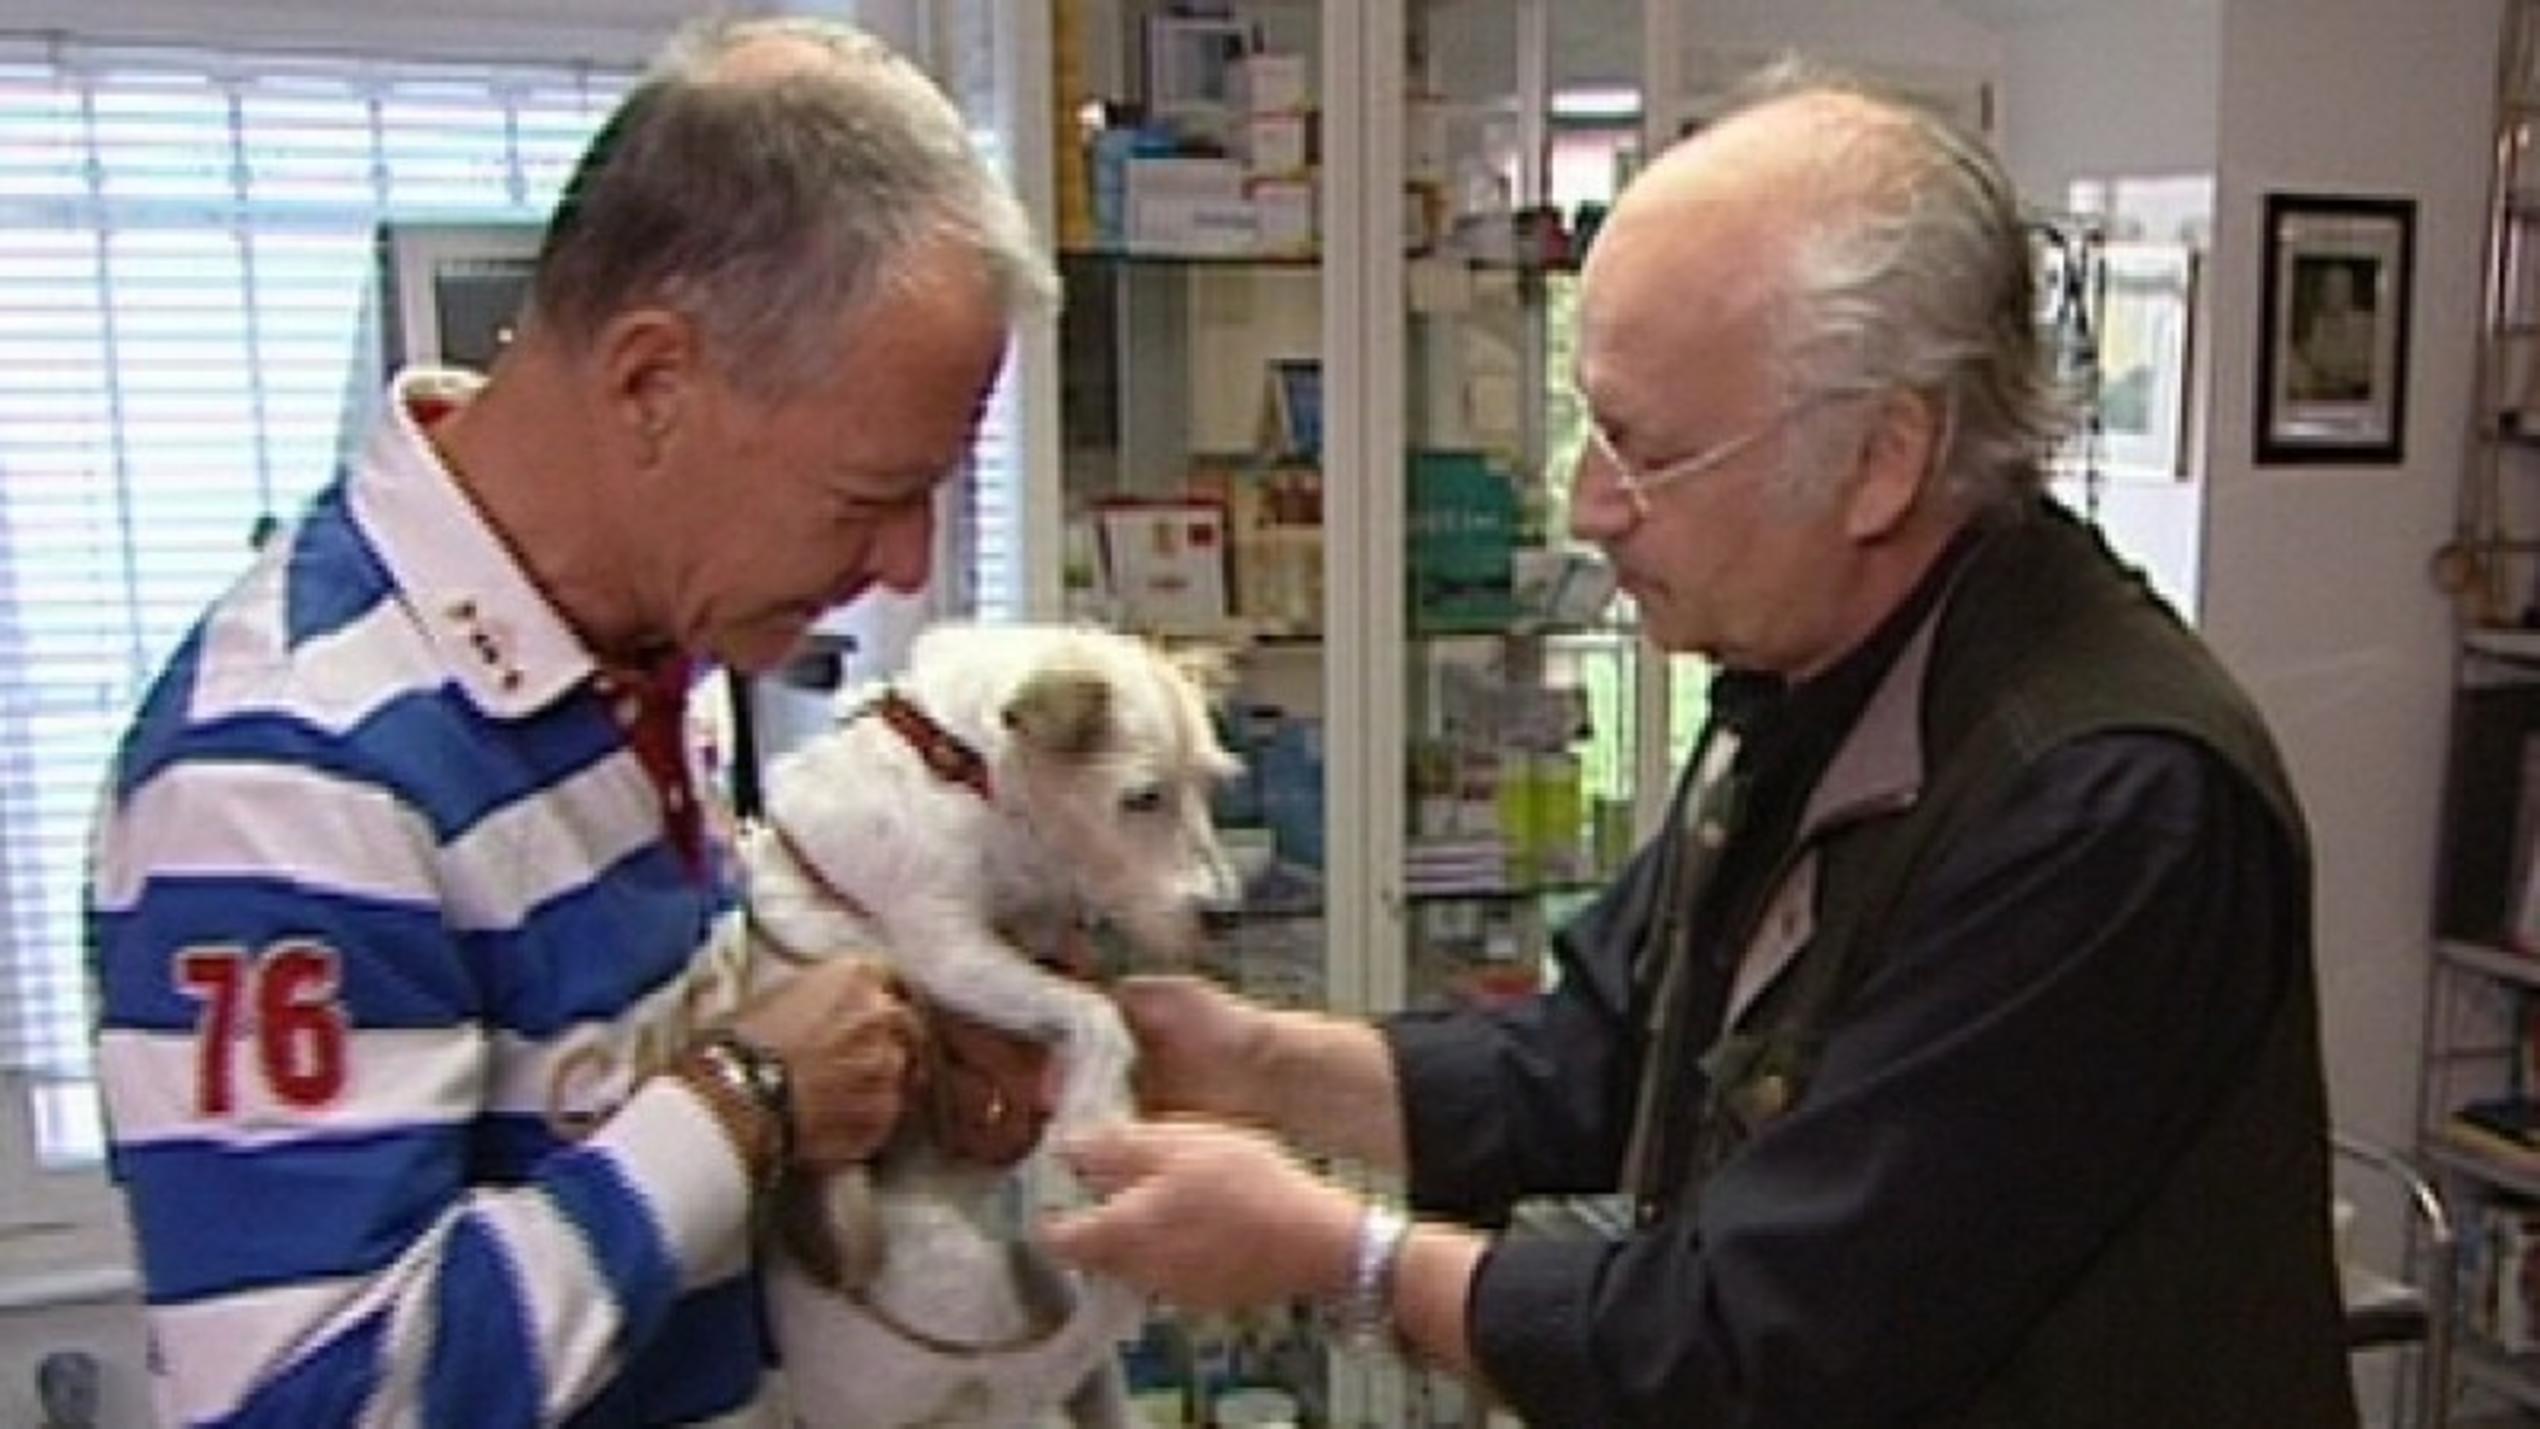 hundkatzemaus-Tierarzt Dr. Wolf behandelt einen Hund